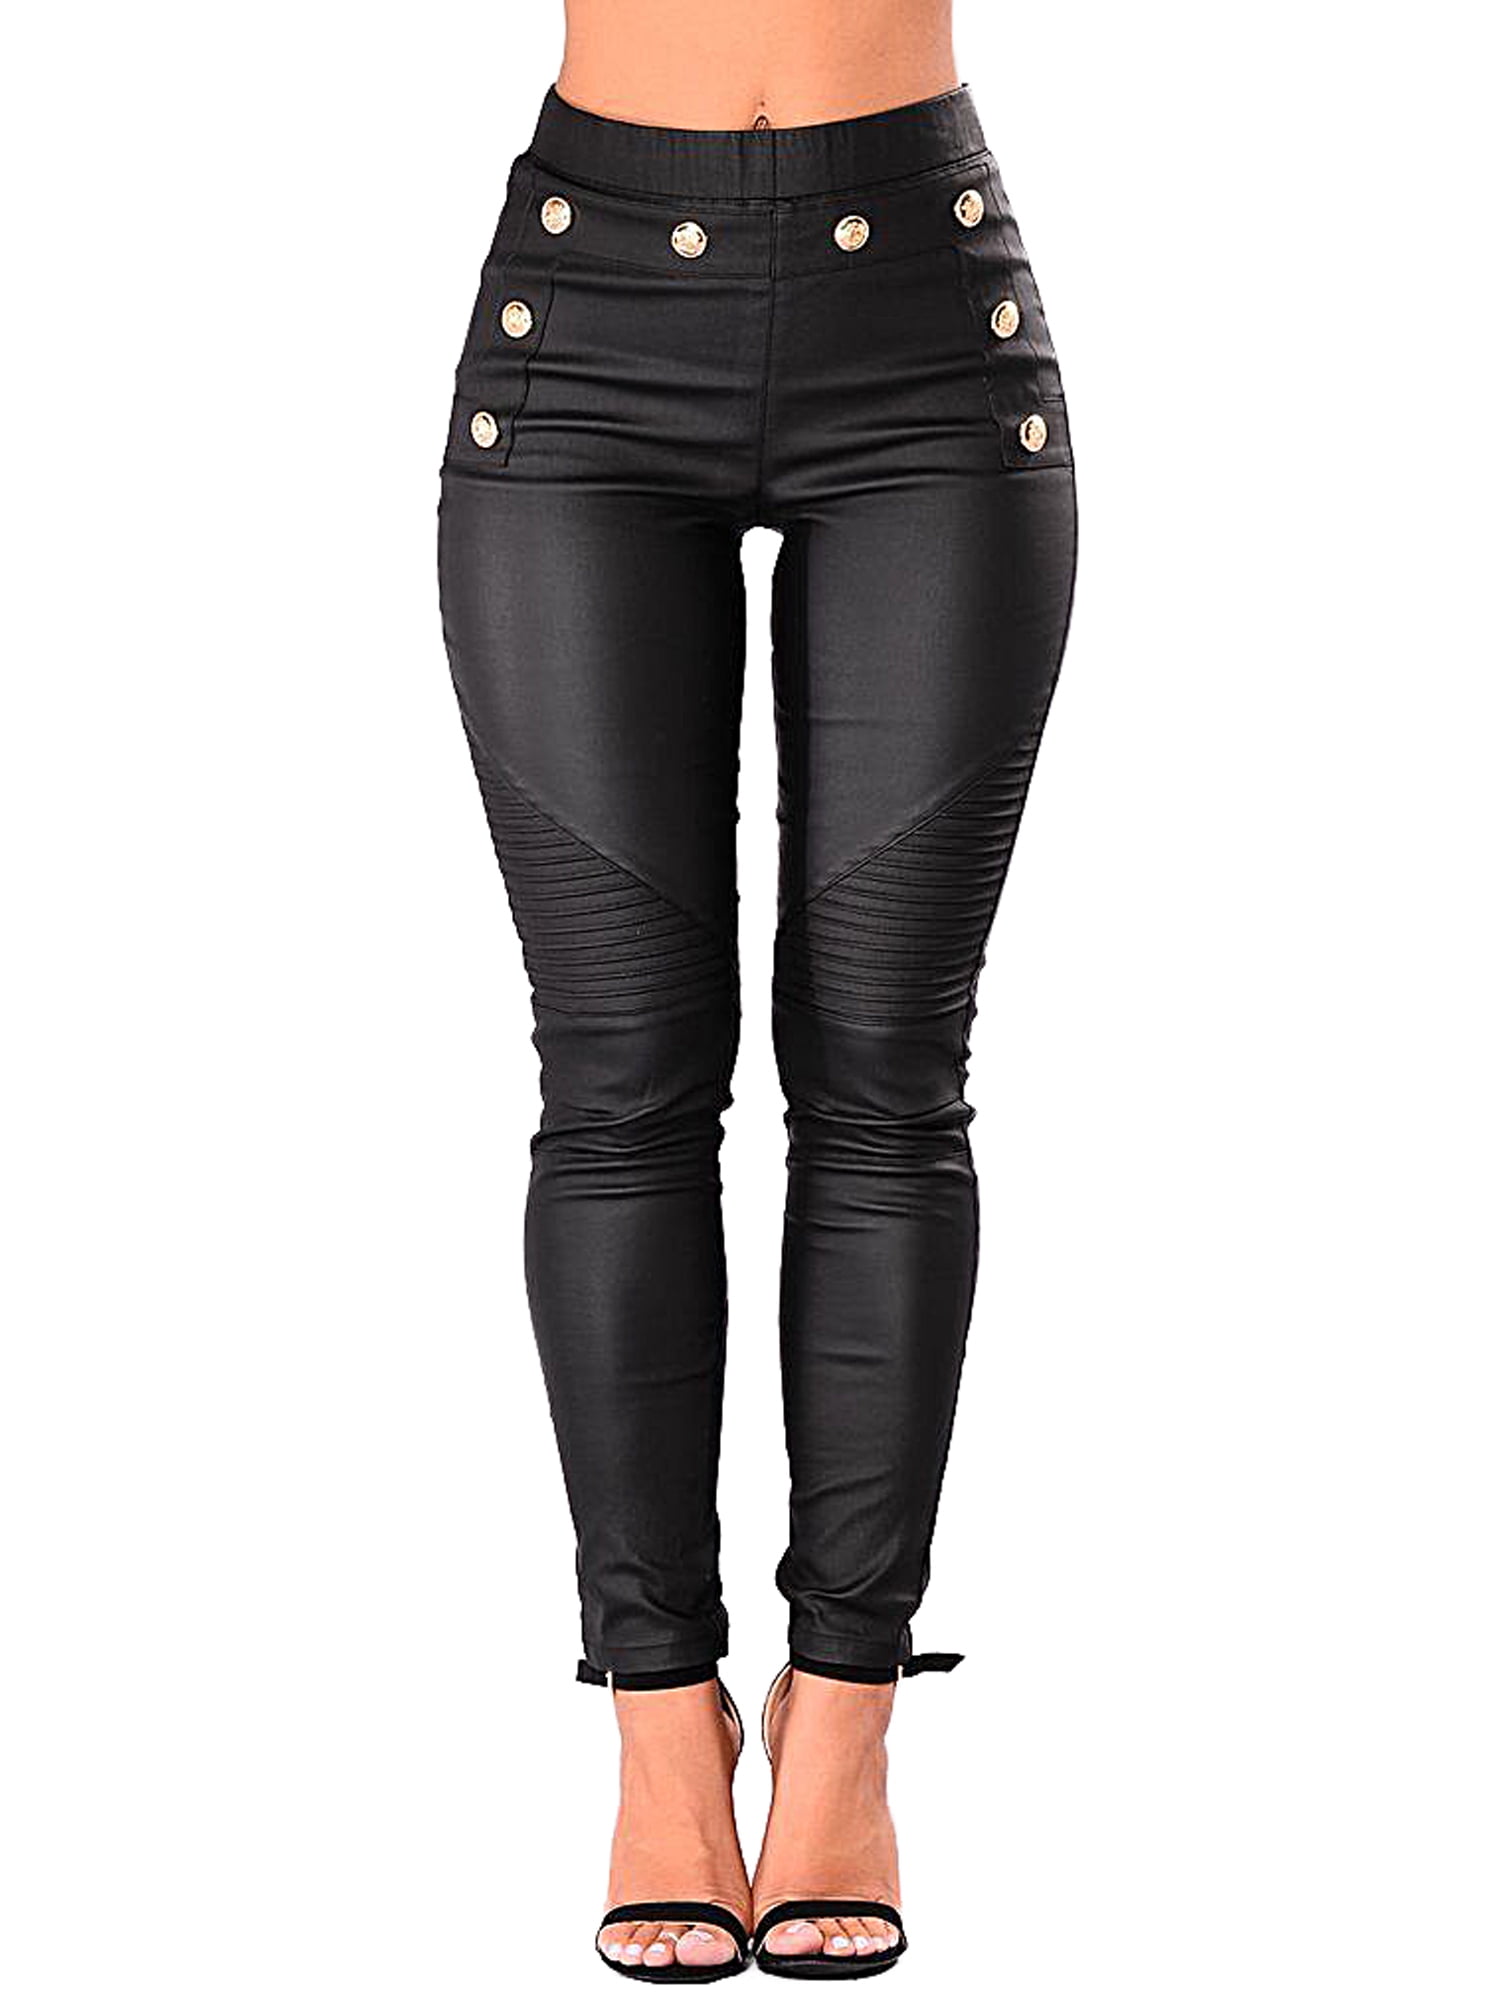 Stretch Faux Leather Pants Jeans Motorcycle Women Pencil Trousers High  Waist Moto Biker Legging Zipper Streetwear